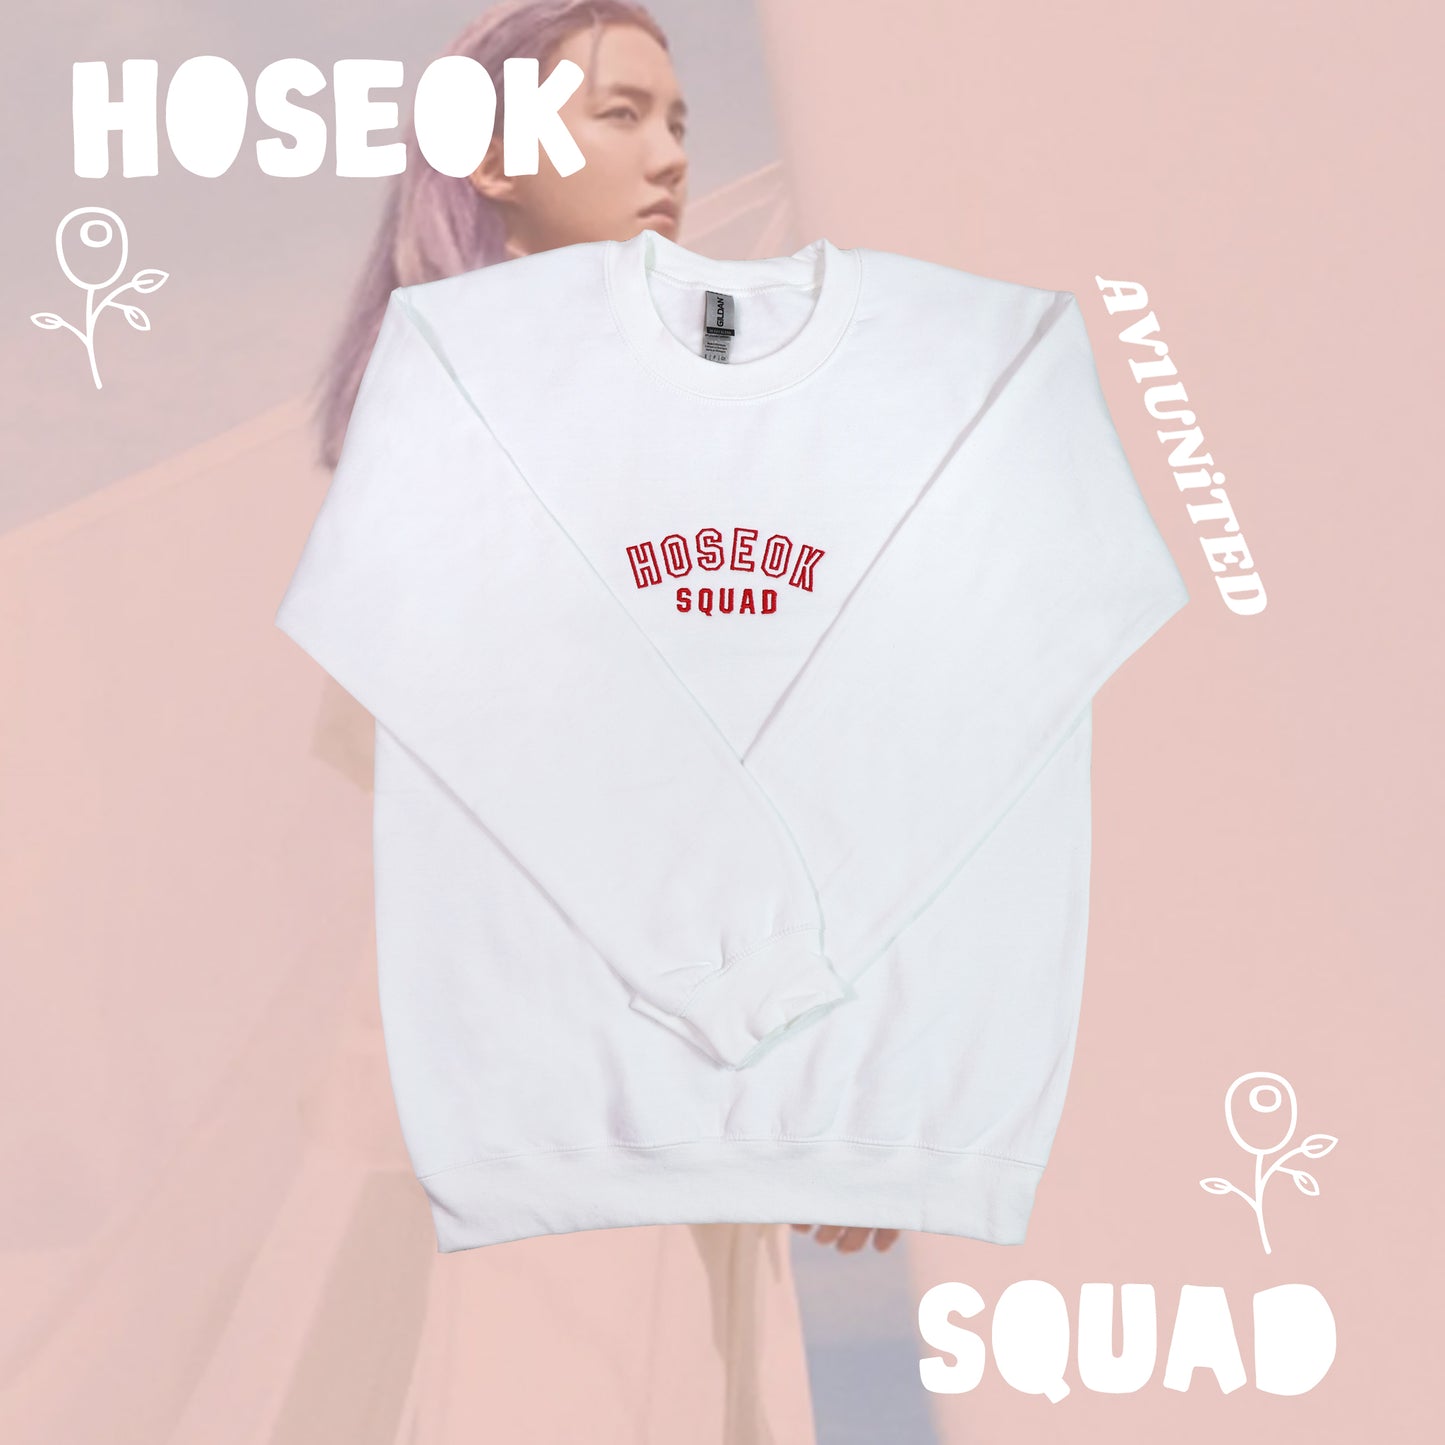 J-Hope/Hoseok Squad Sweatshirt